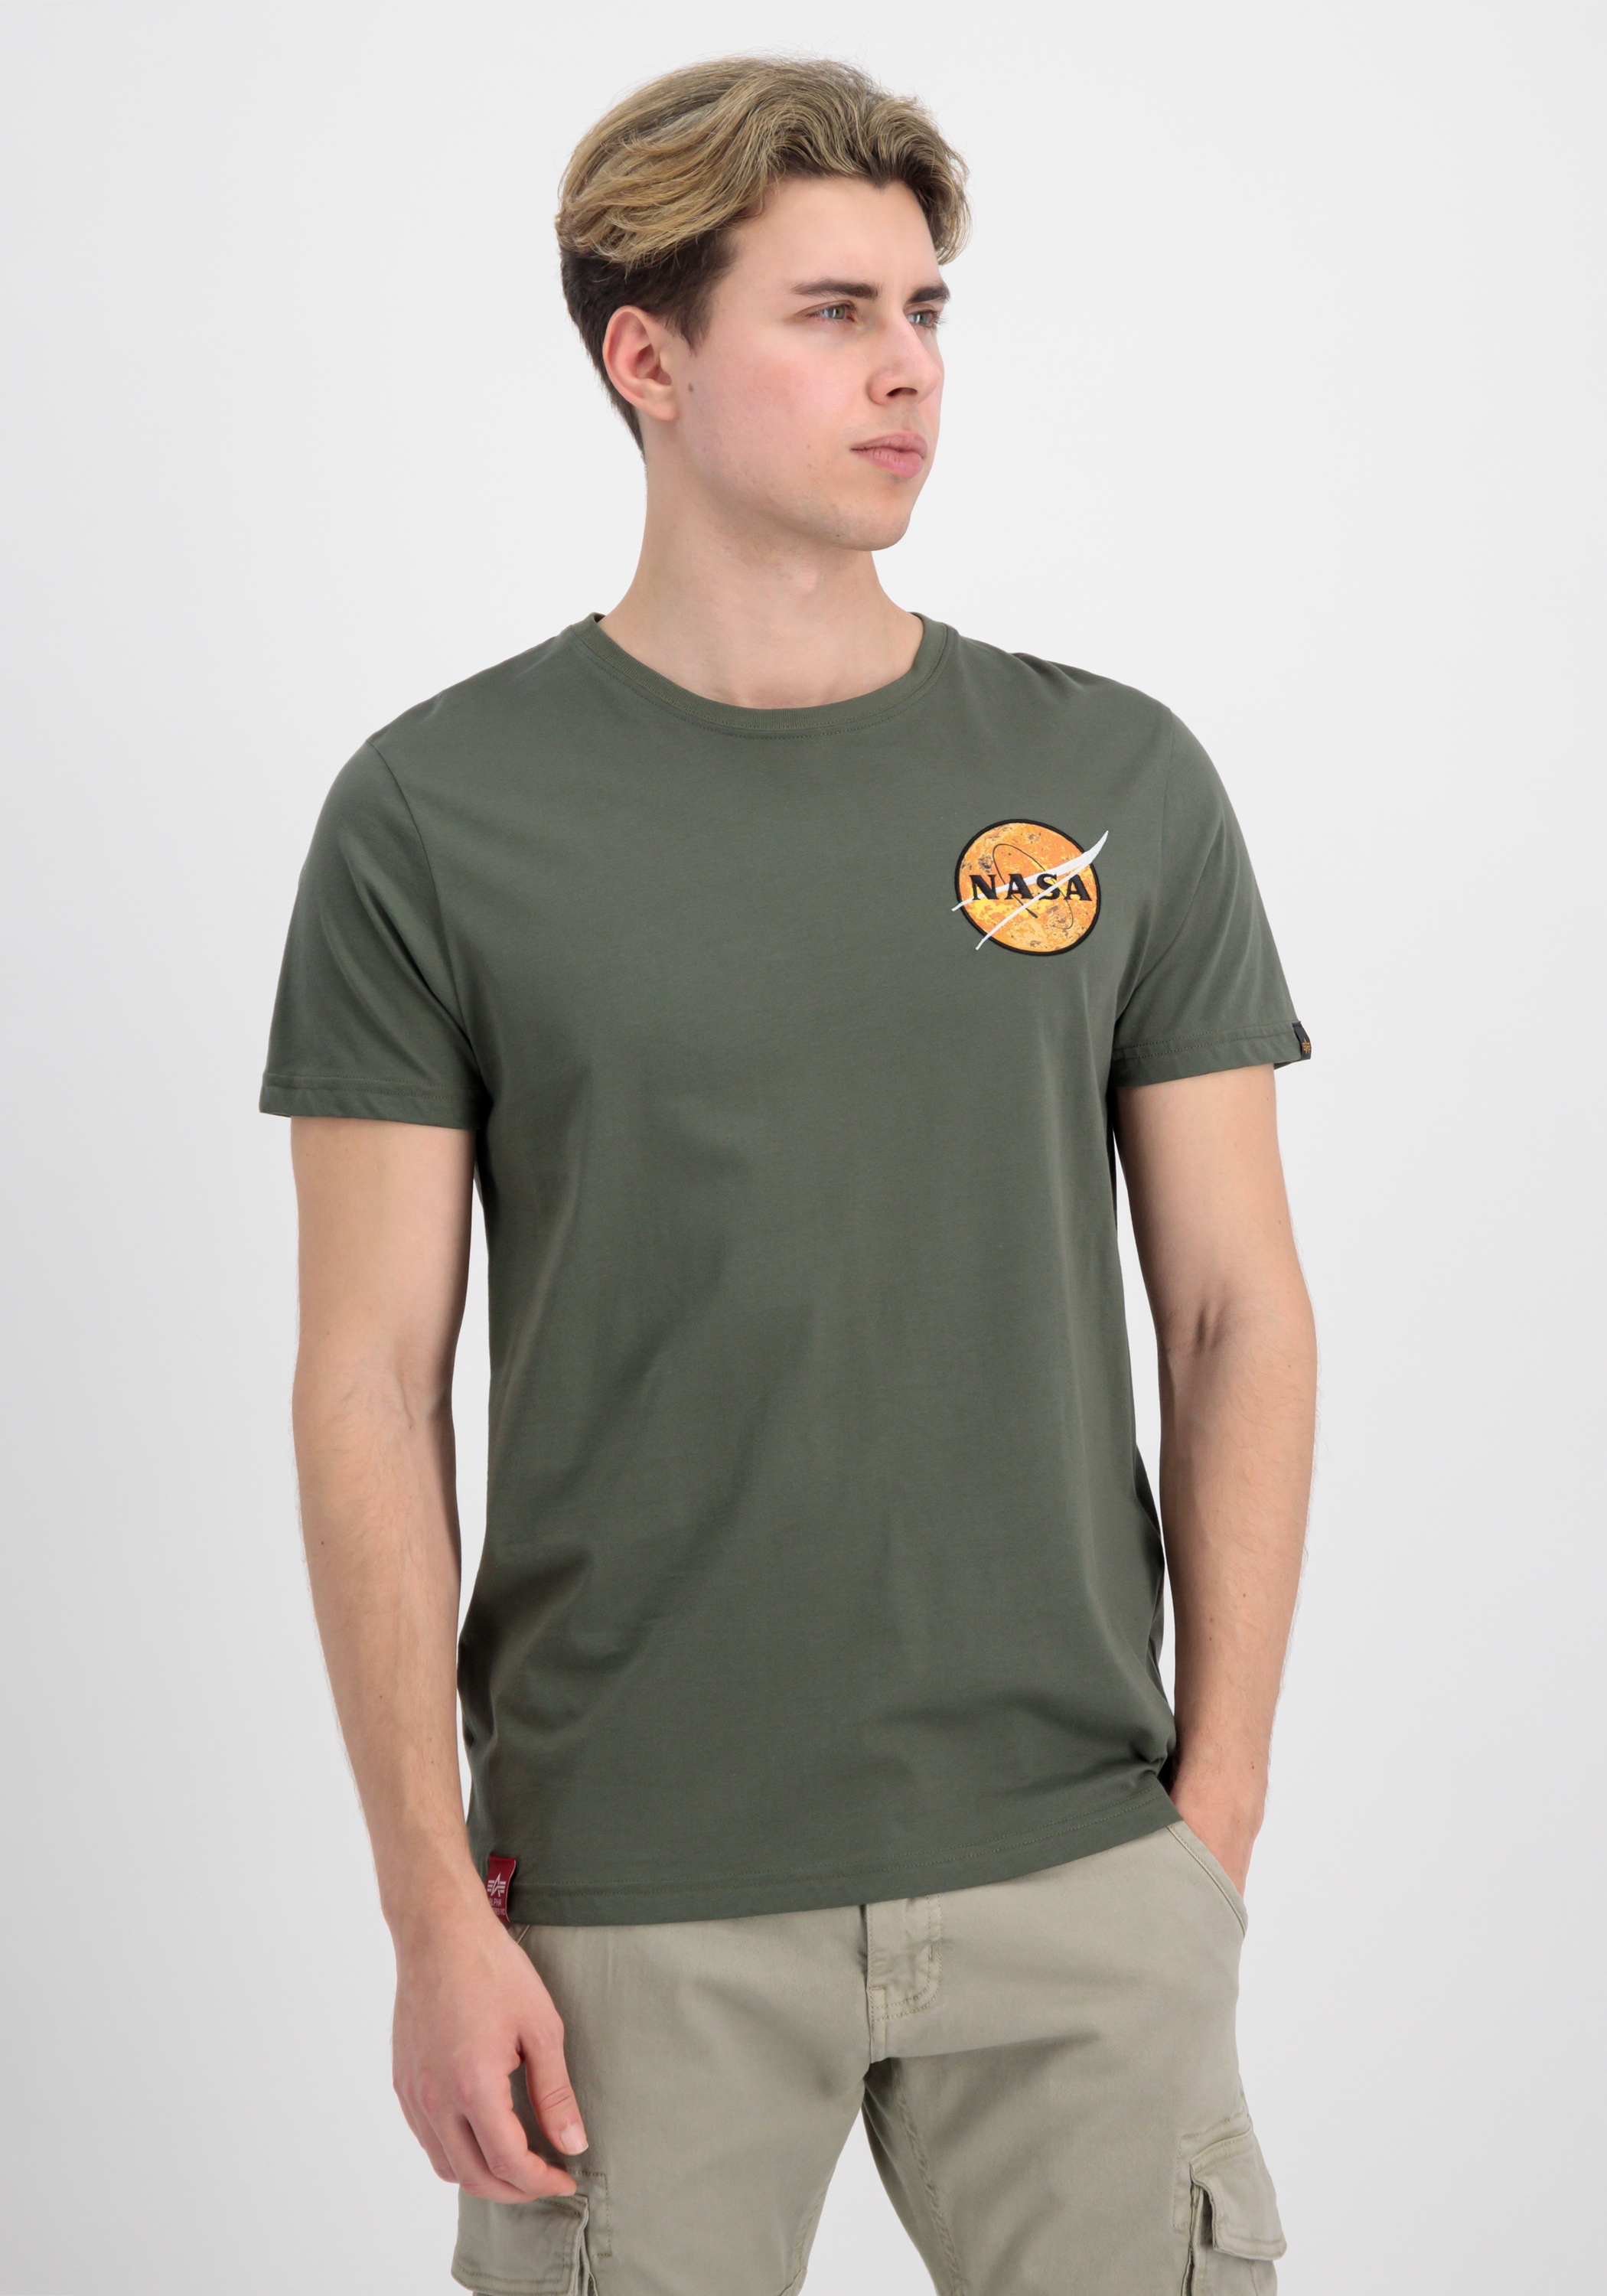 | »Alpha T-Shirts bestellen Davinci T-Shirt - BAUR Men ▷ NASA Industries T« Industries Alpha